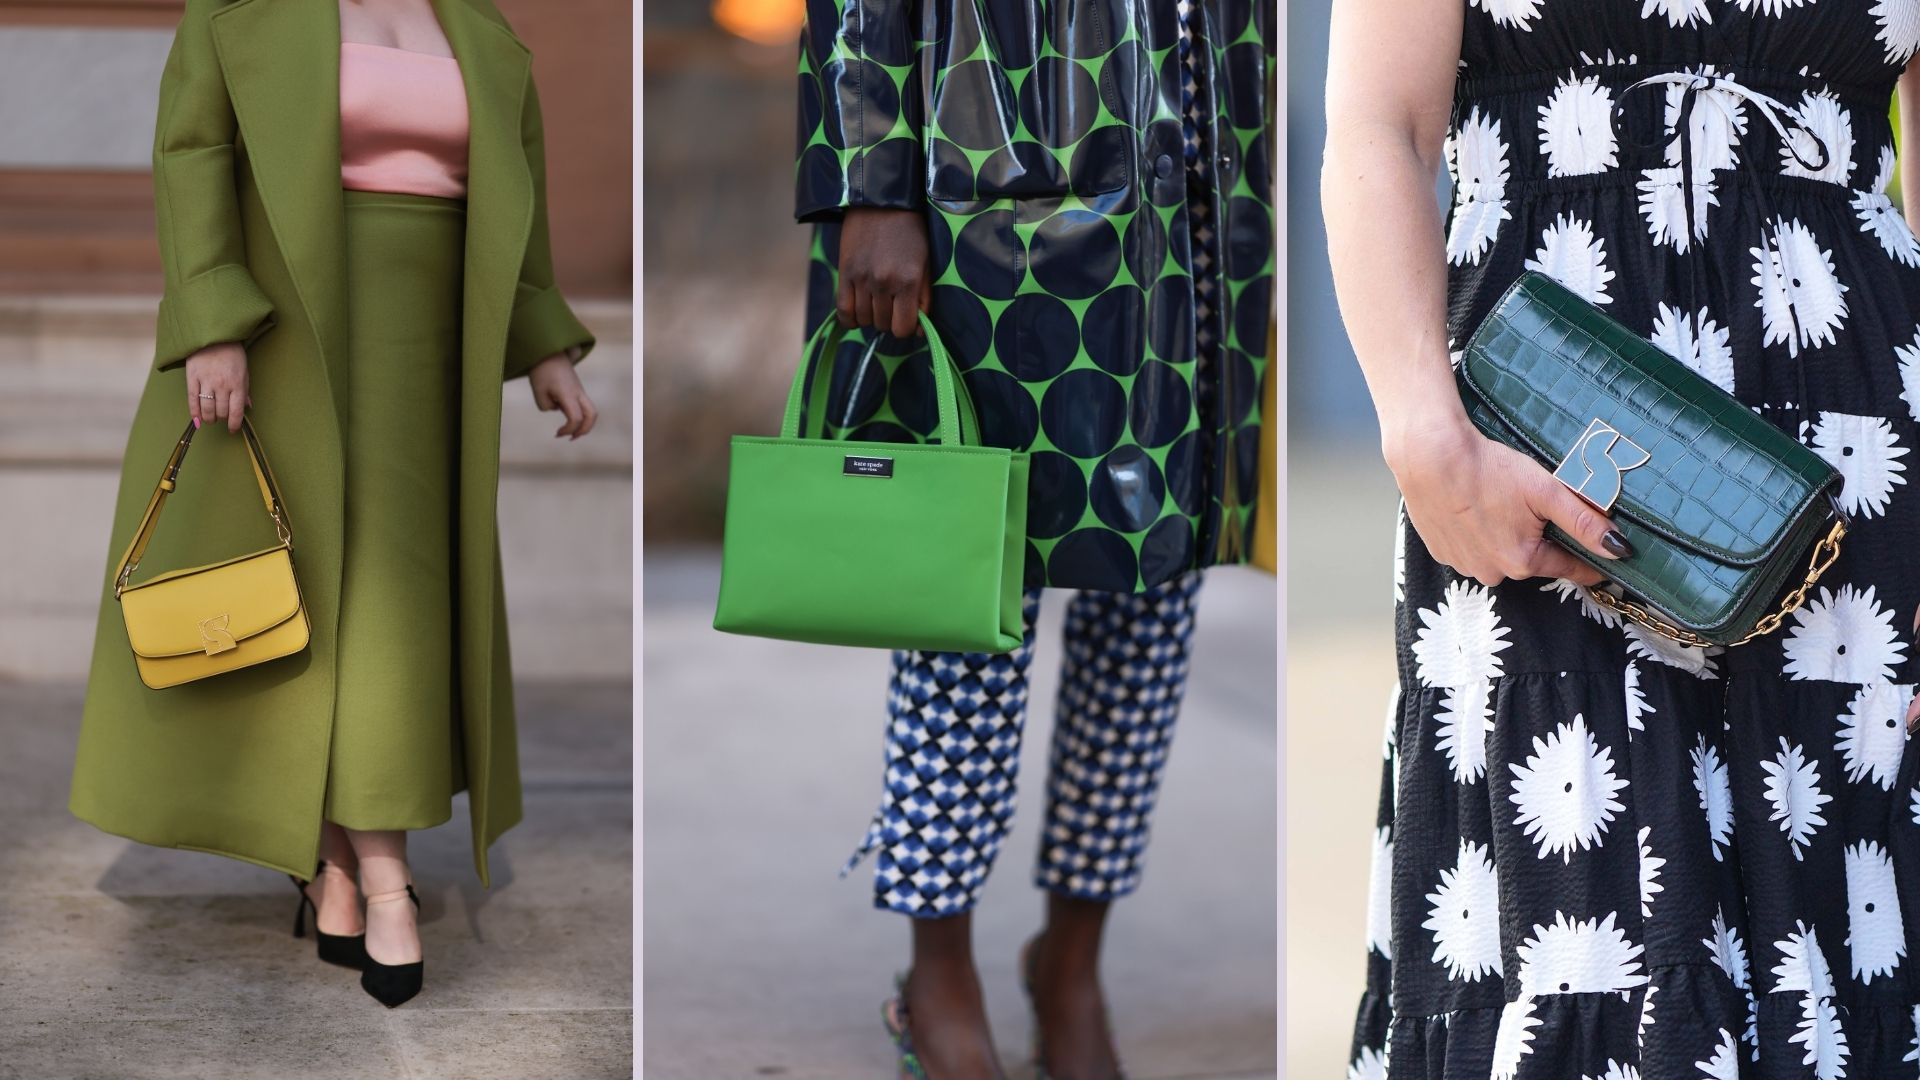 Stiletto heel-shaped handbag hits the market for $375